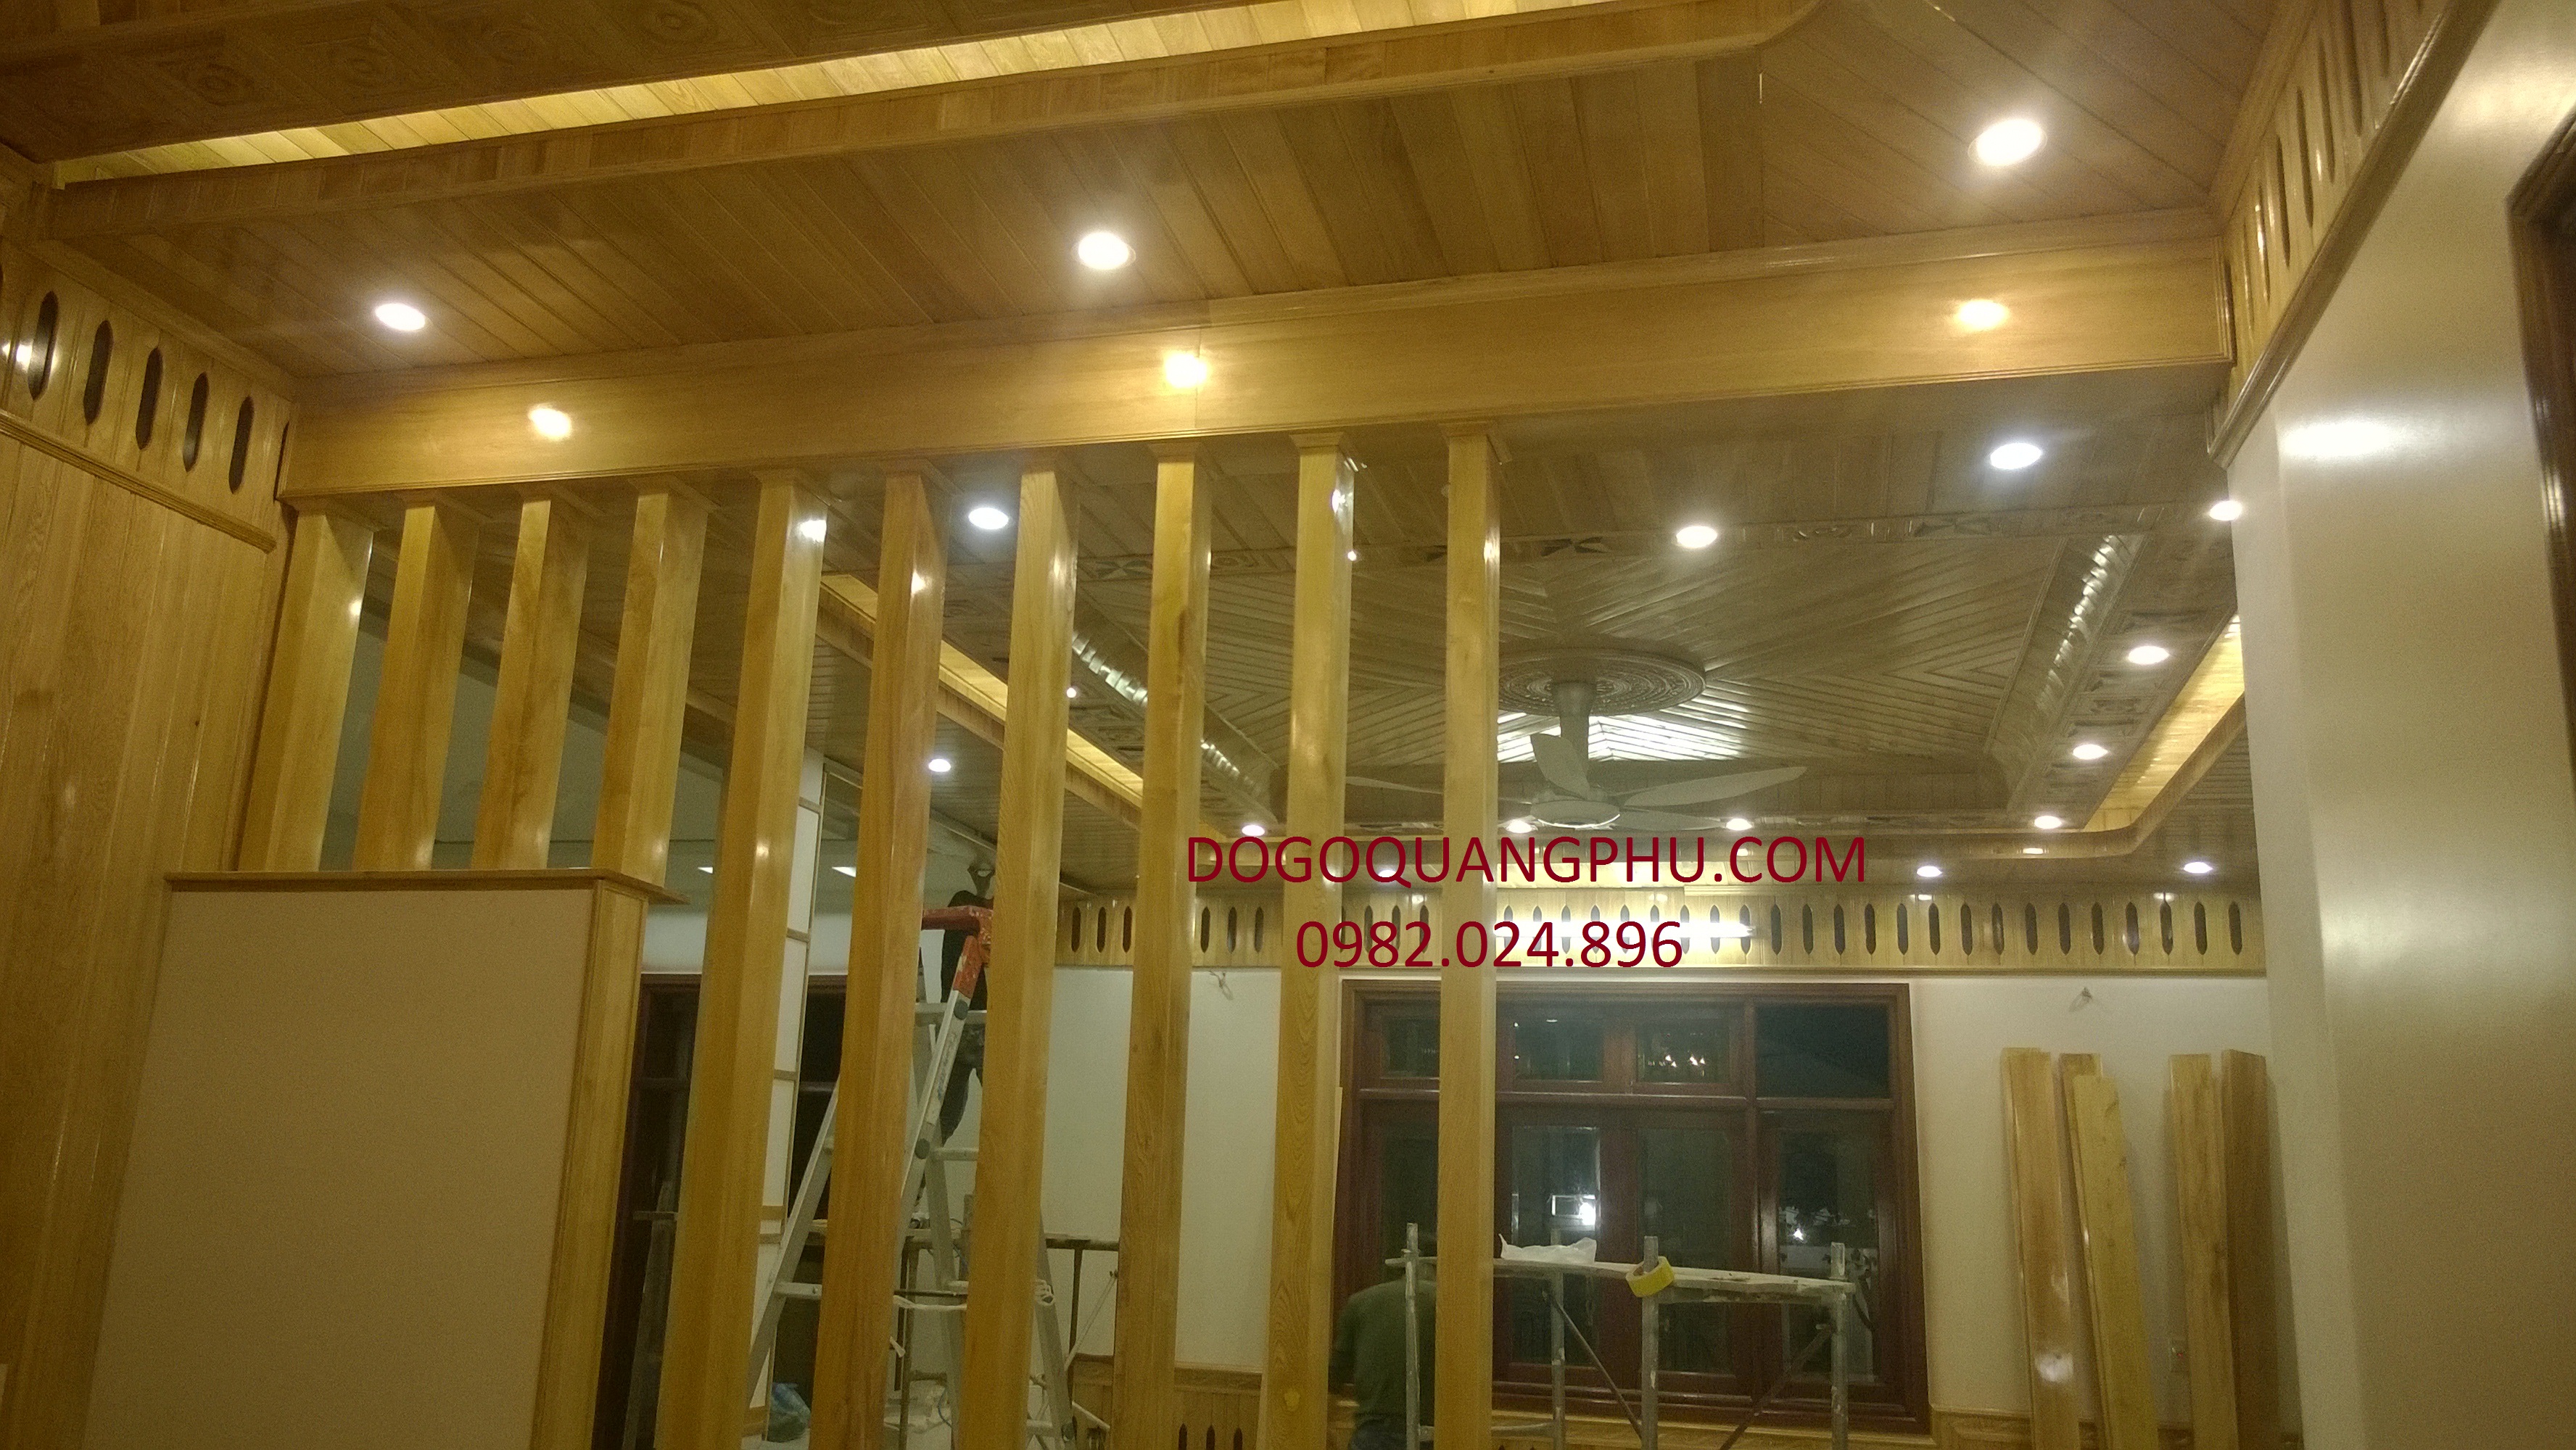 Trần gỗ phòng khách có độ bền cao giúp cho thời gian sử dụng trần được lâu và đảm bảo.